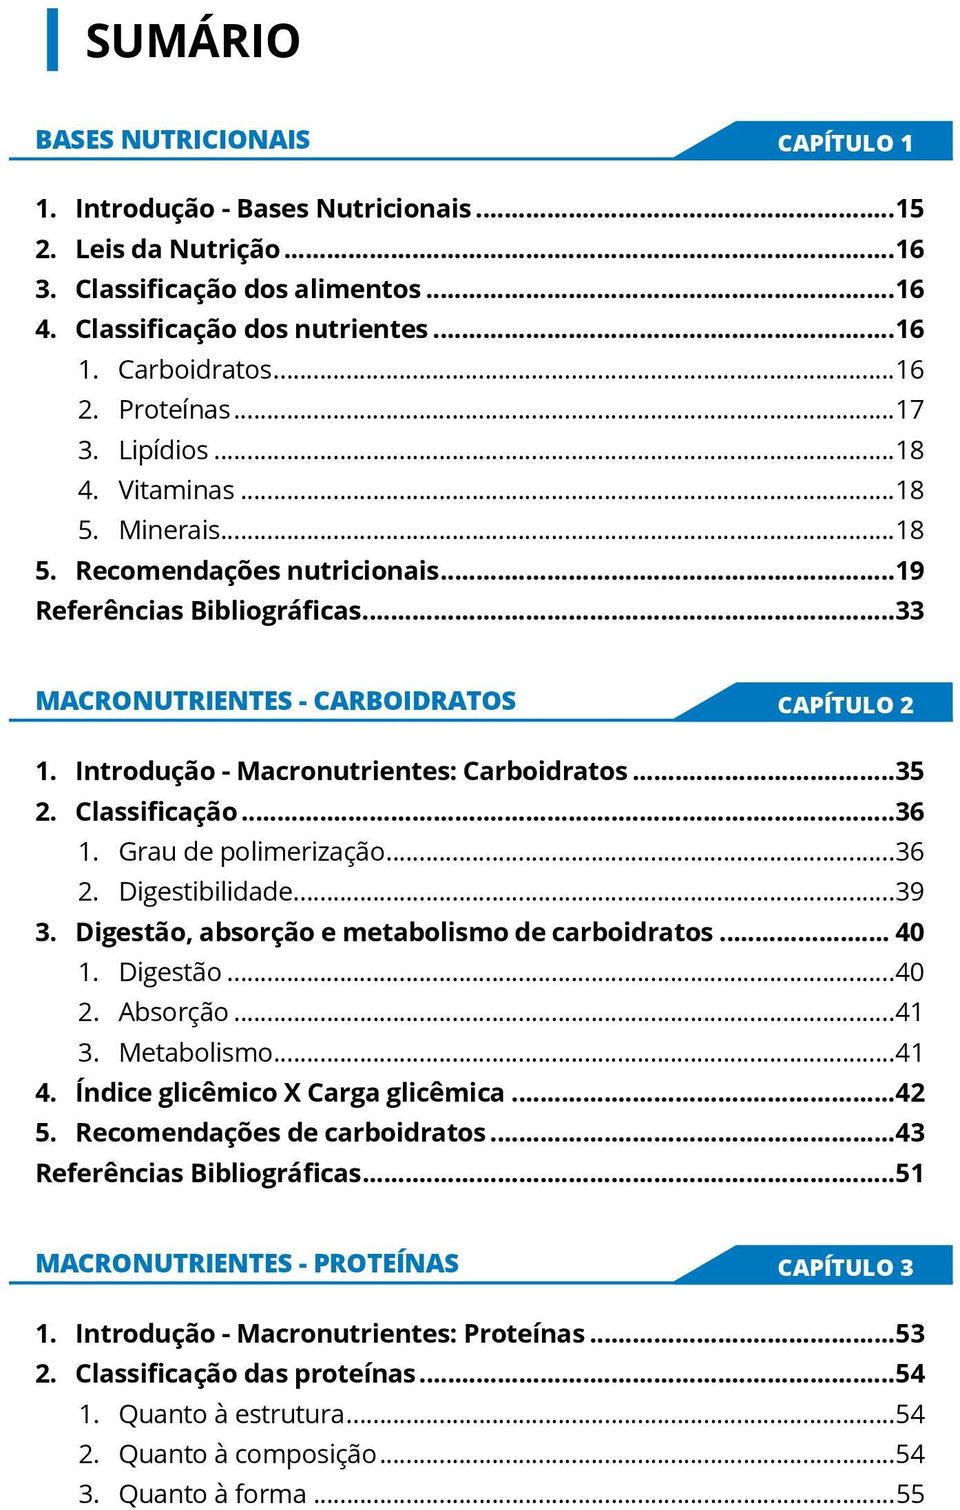 Introdução - Macronutrientes: Carboidratos...35 2. Classificação...36 1. Grau de polimerização...36 2. Digestibilidade...39 3. Digestão, absorção e.metabolismo de carboidratos... 40 1. Digestão...40 2.